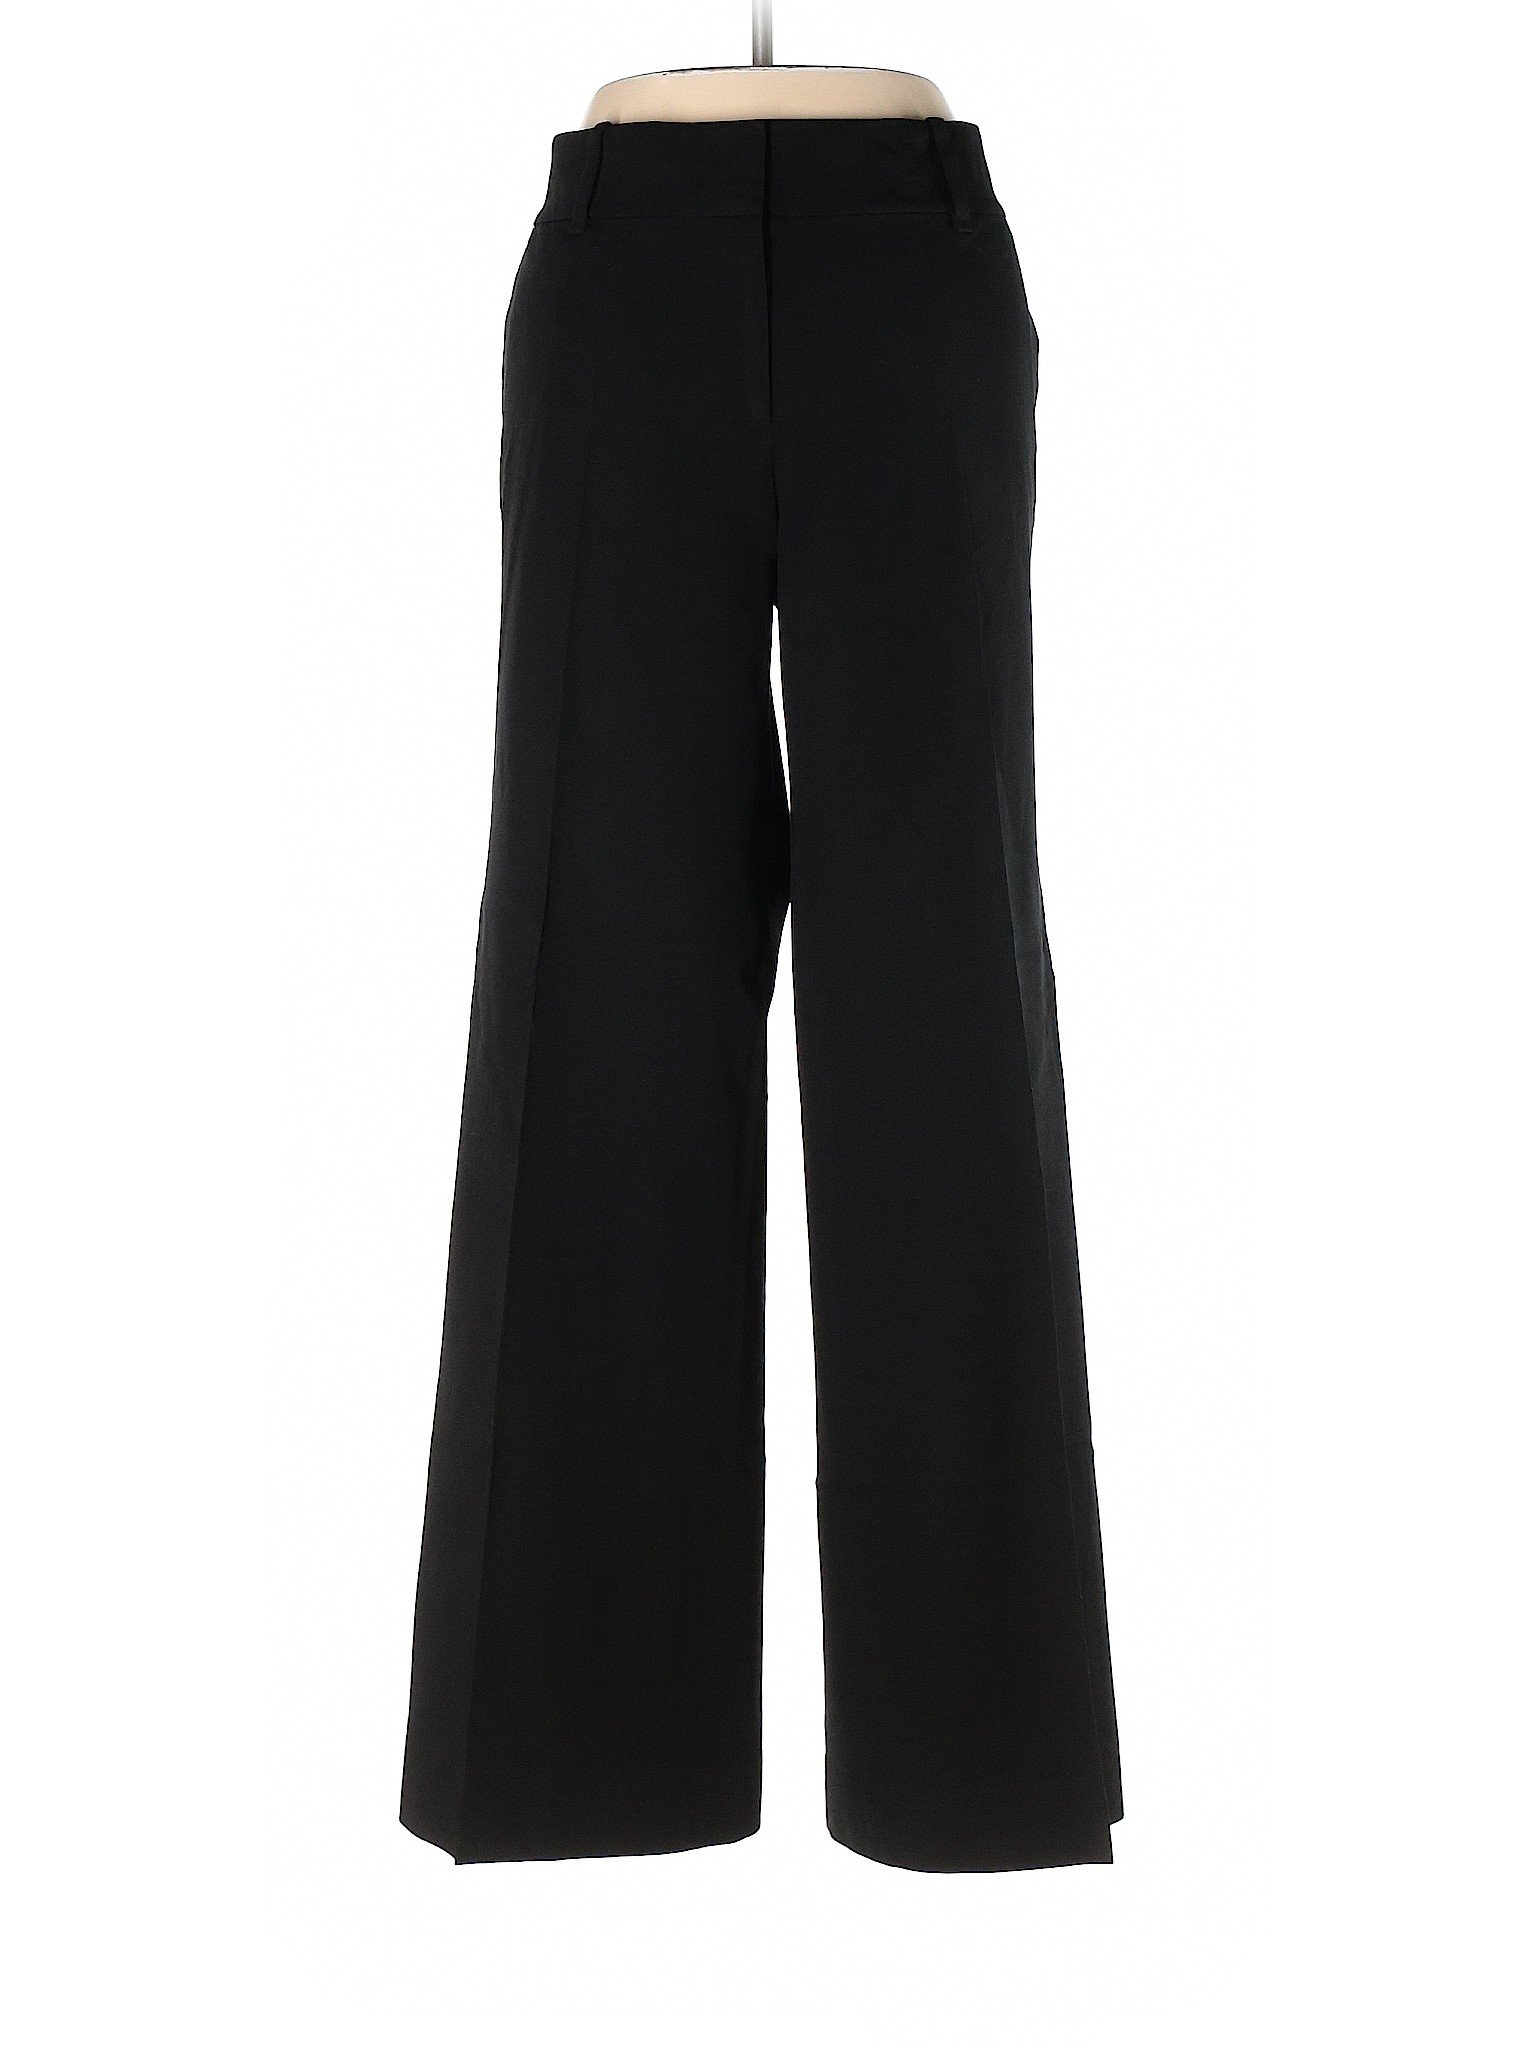 Ann Taylor Women Black Dress Pants 8 | eBay